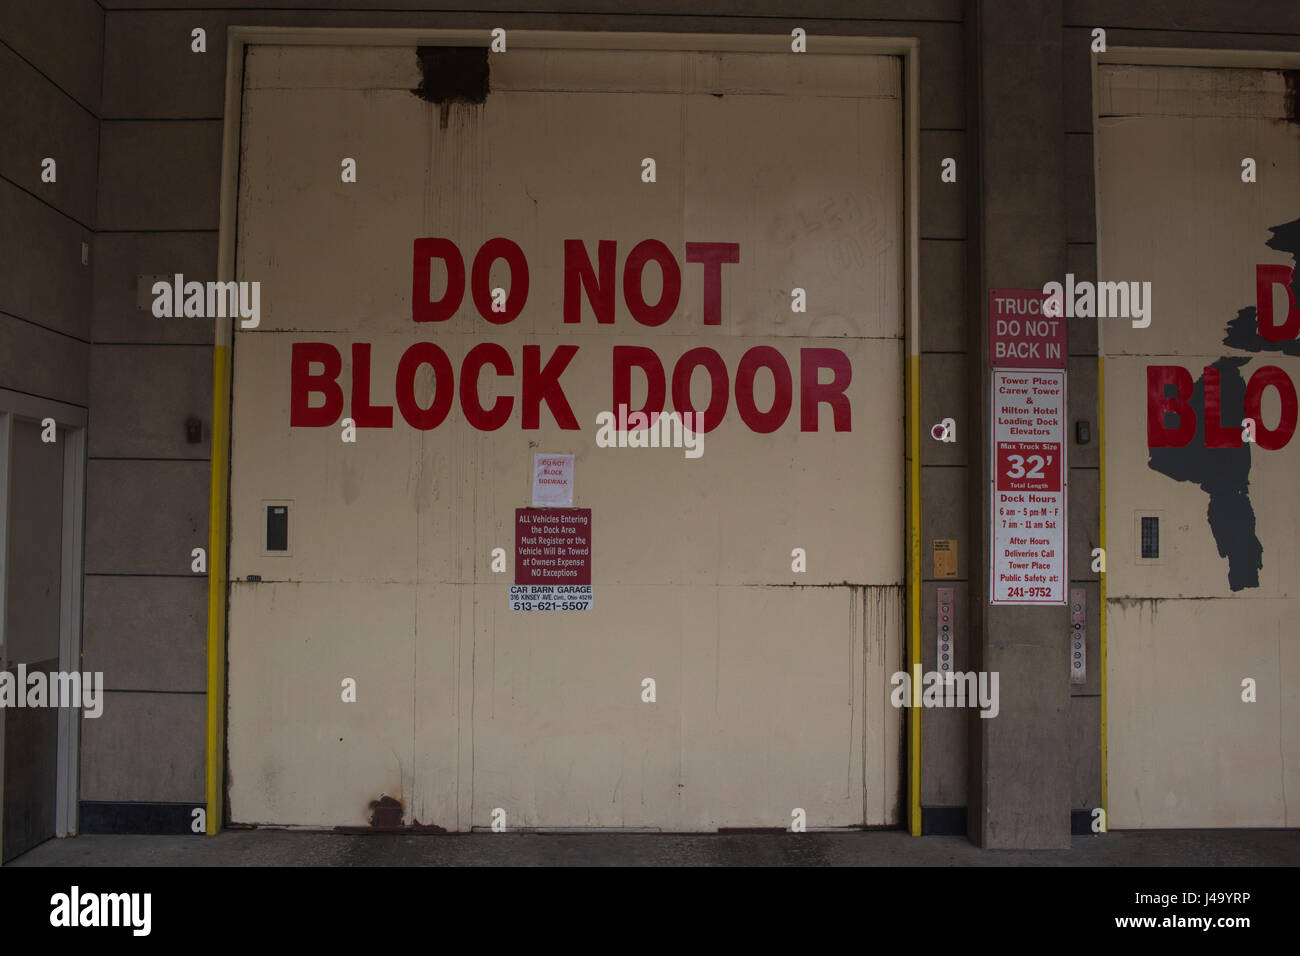 Garage door that reads do not block door in bold red letters. Stock Photo